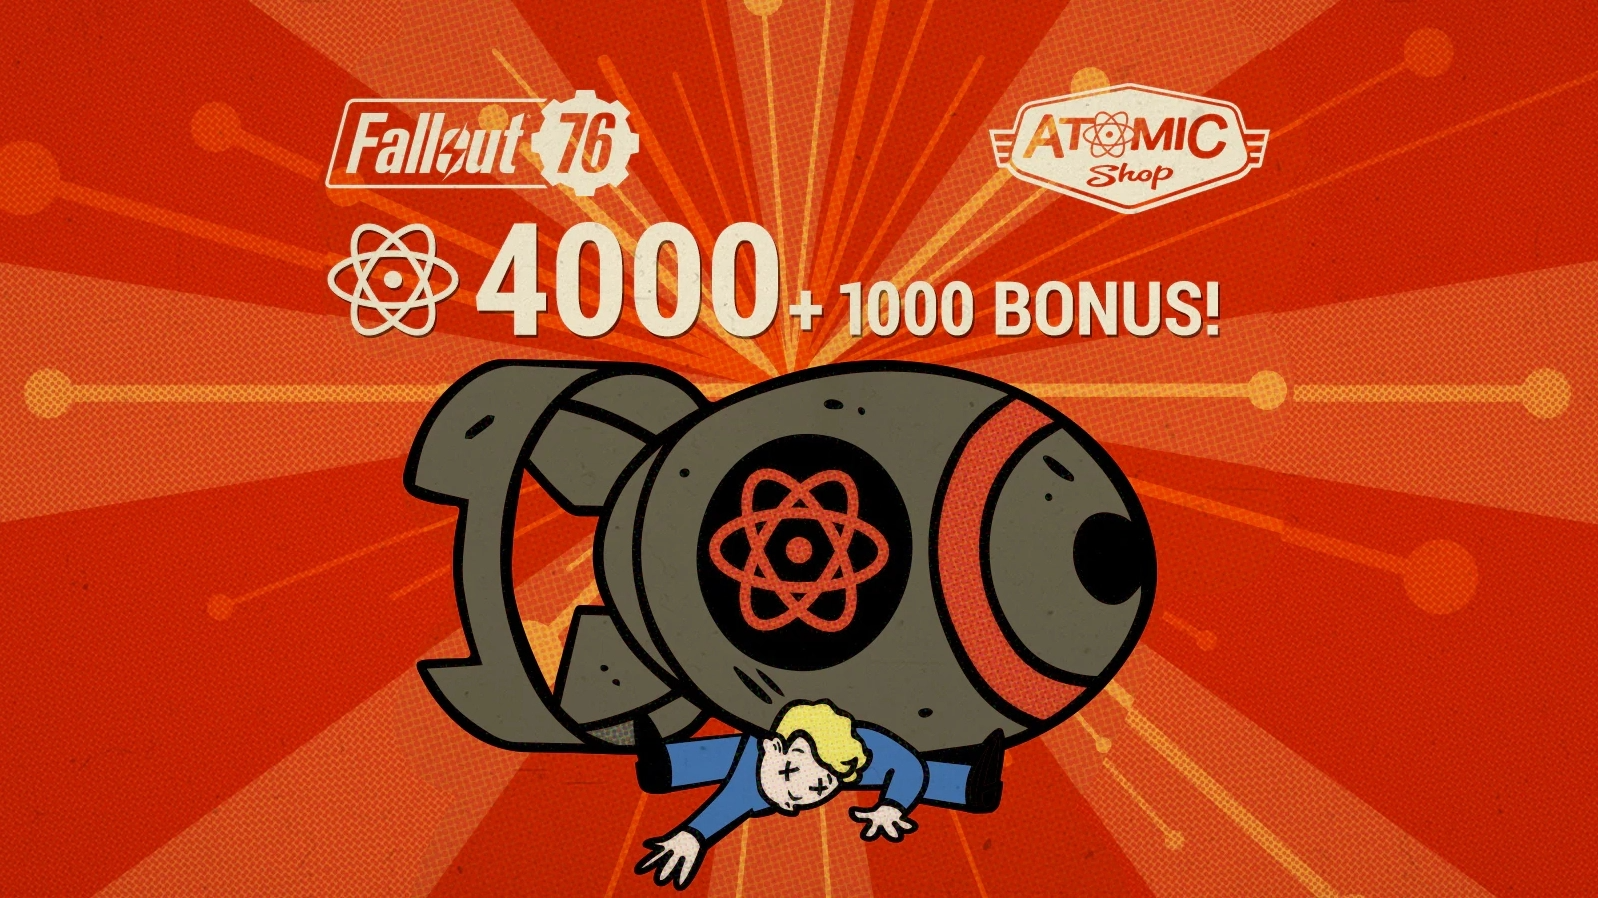 Fallout 76: 4000 (+1000 Bonus) Atoms - Xbox One